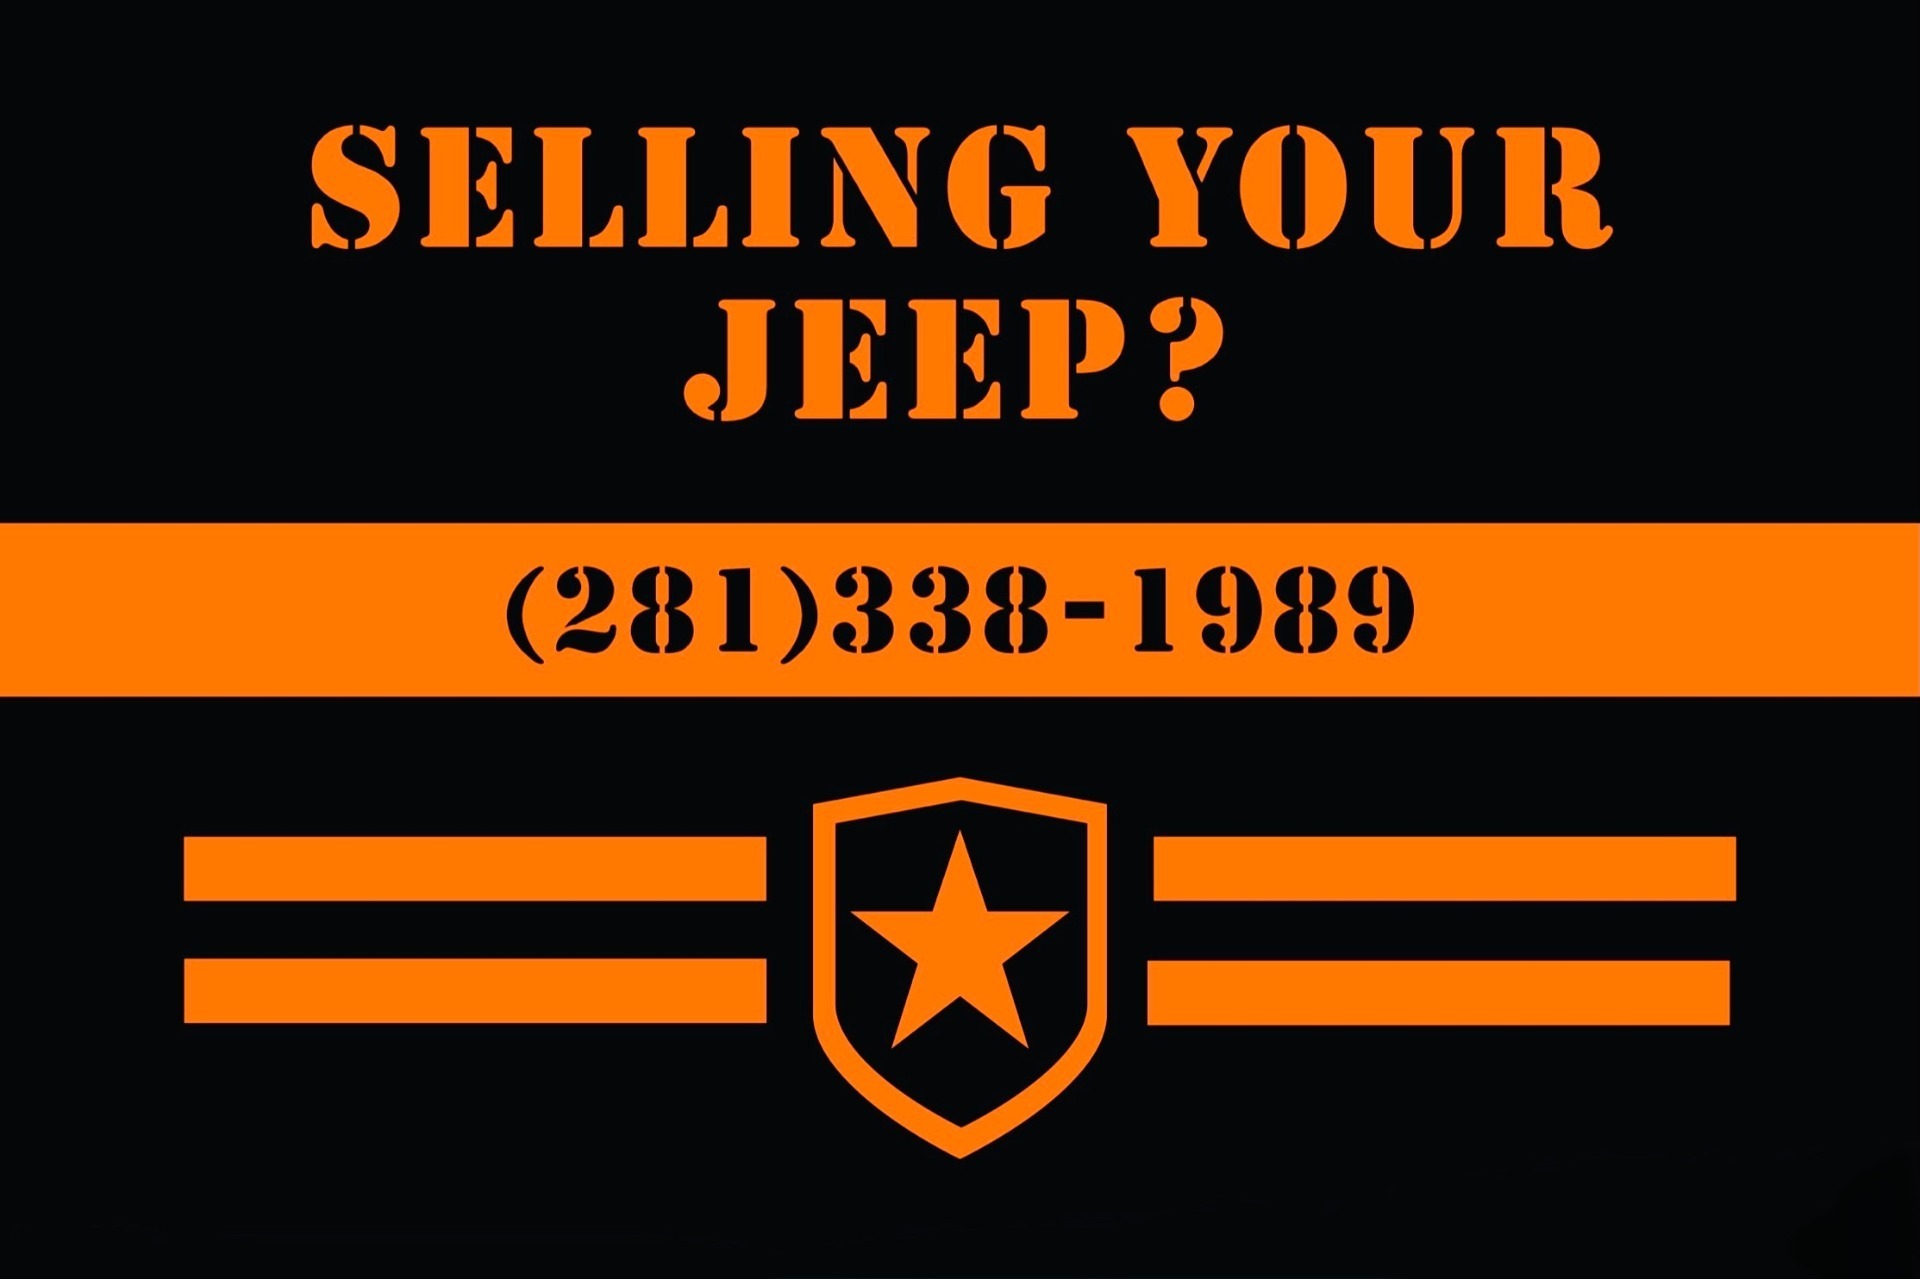 Used-1985-Jeep-CJ-7